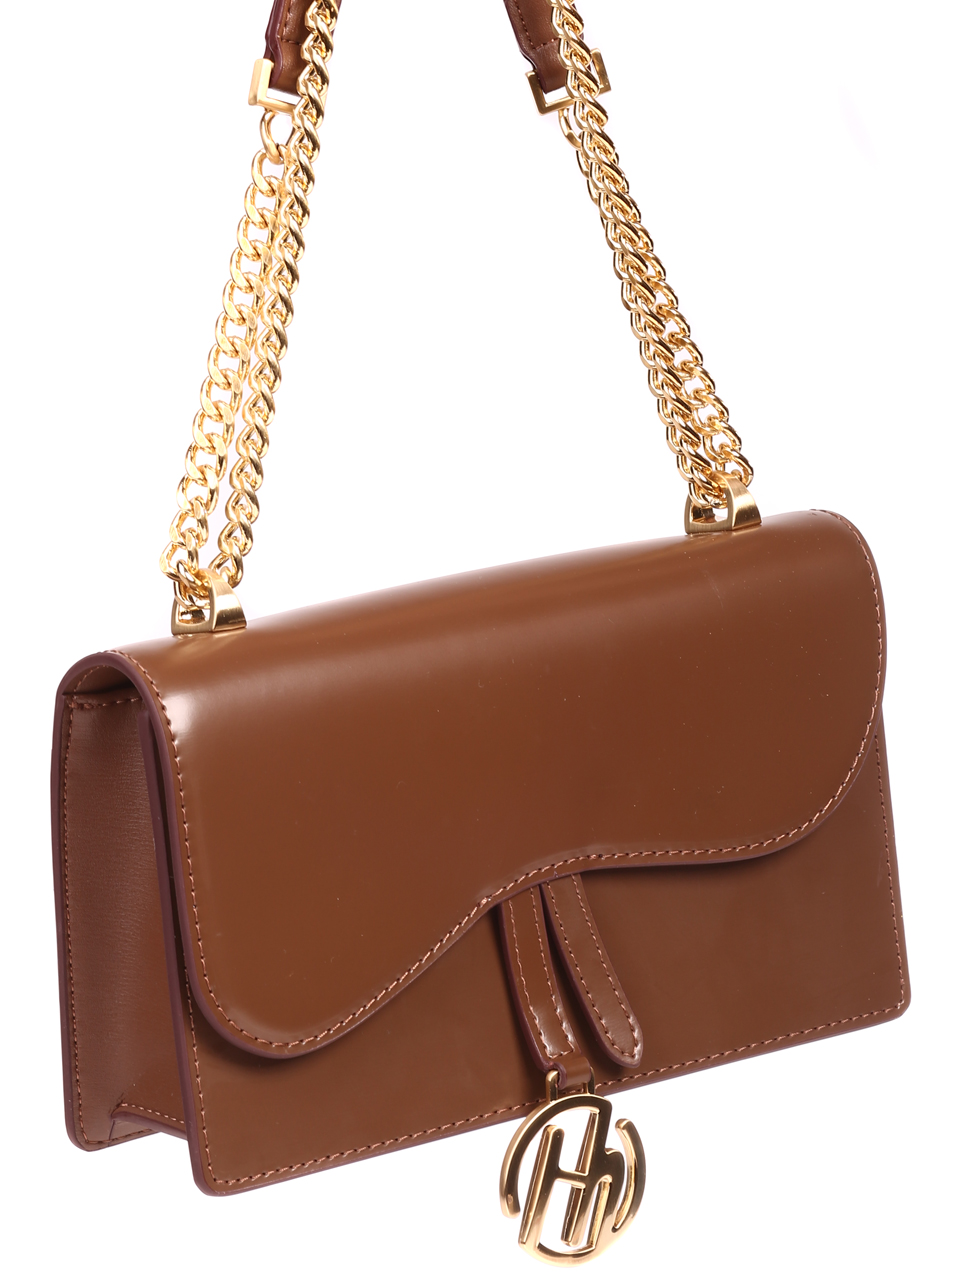 Елегантна дамска чанта в кафяво от естествена кожа P20156 brown